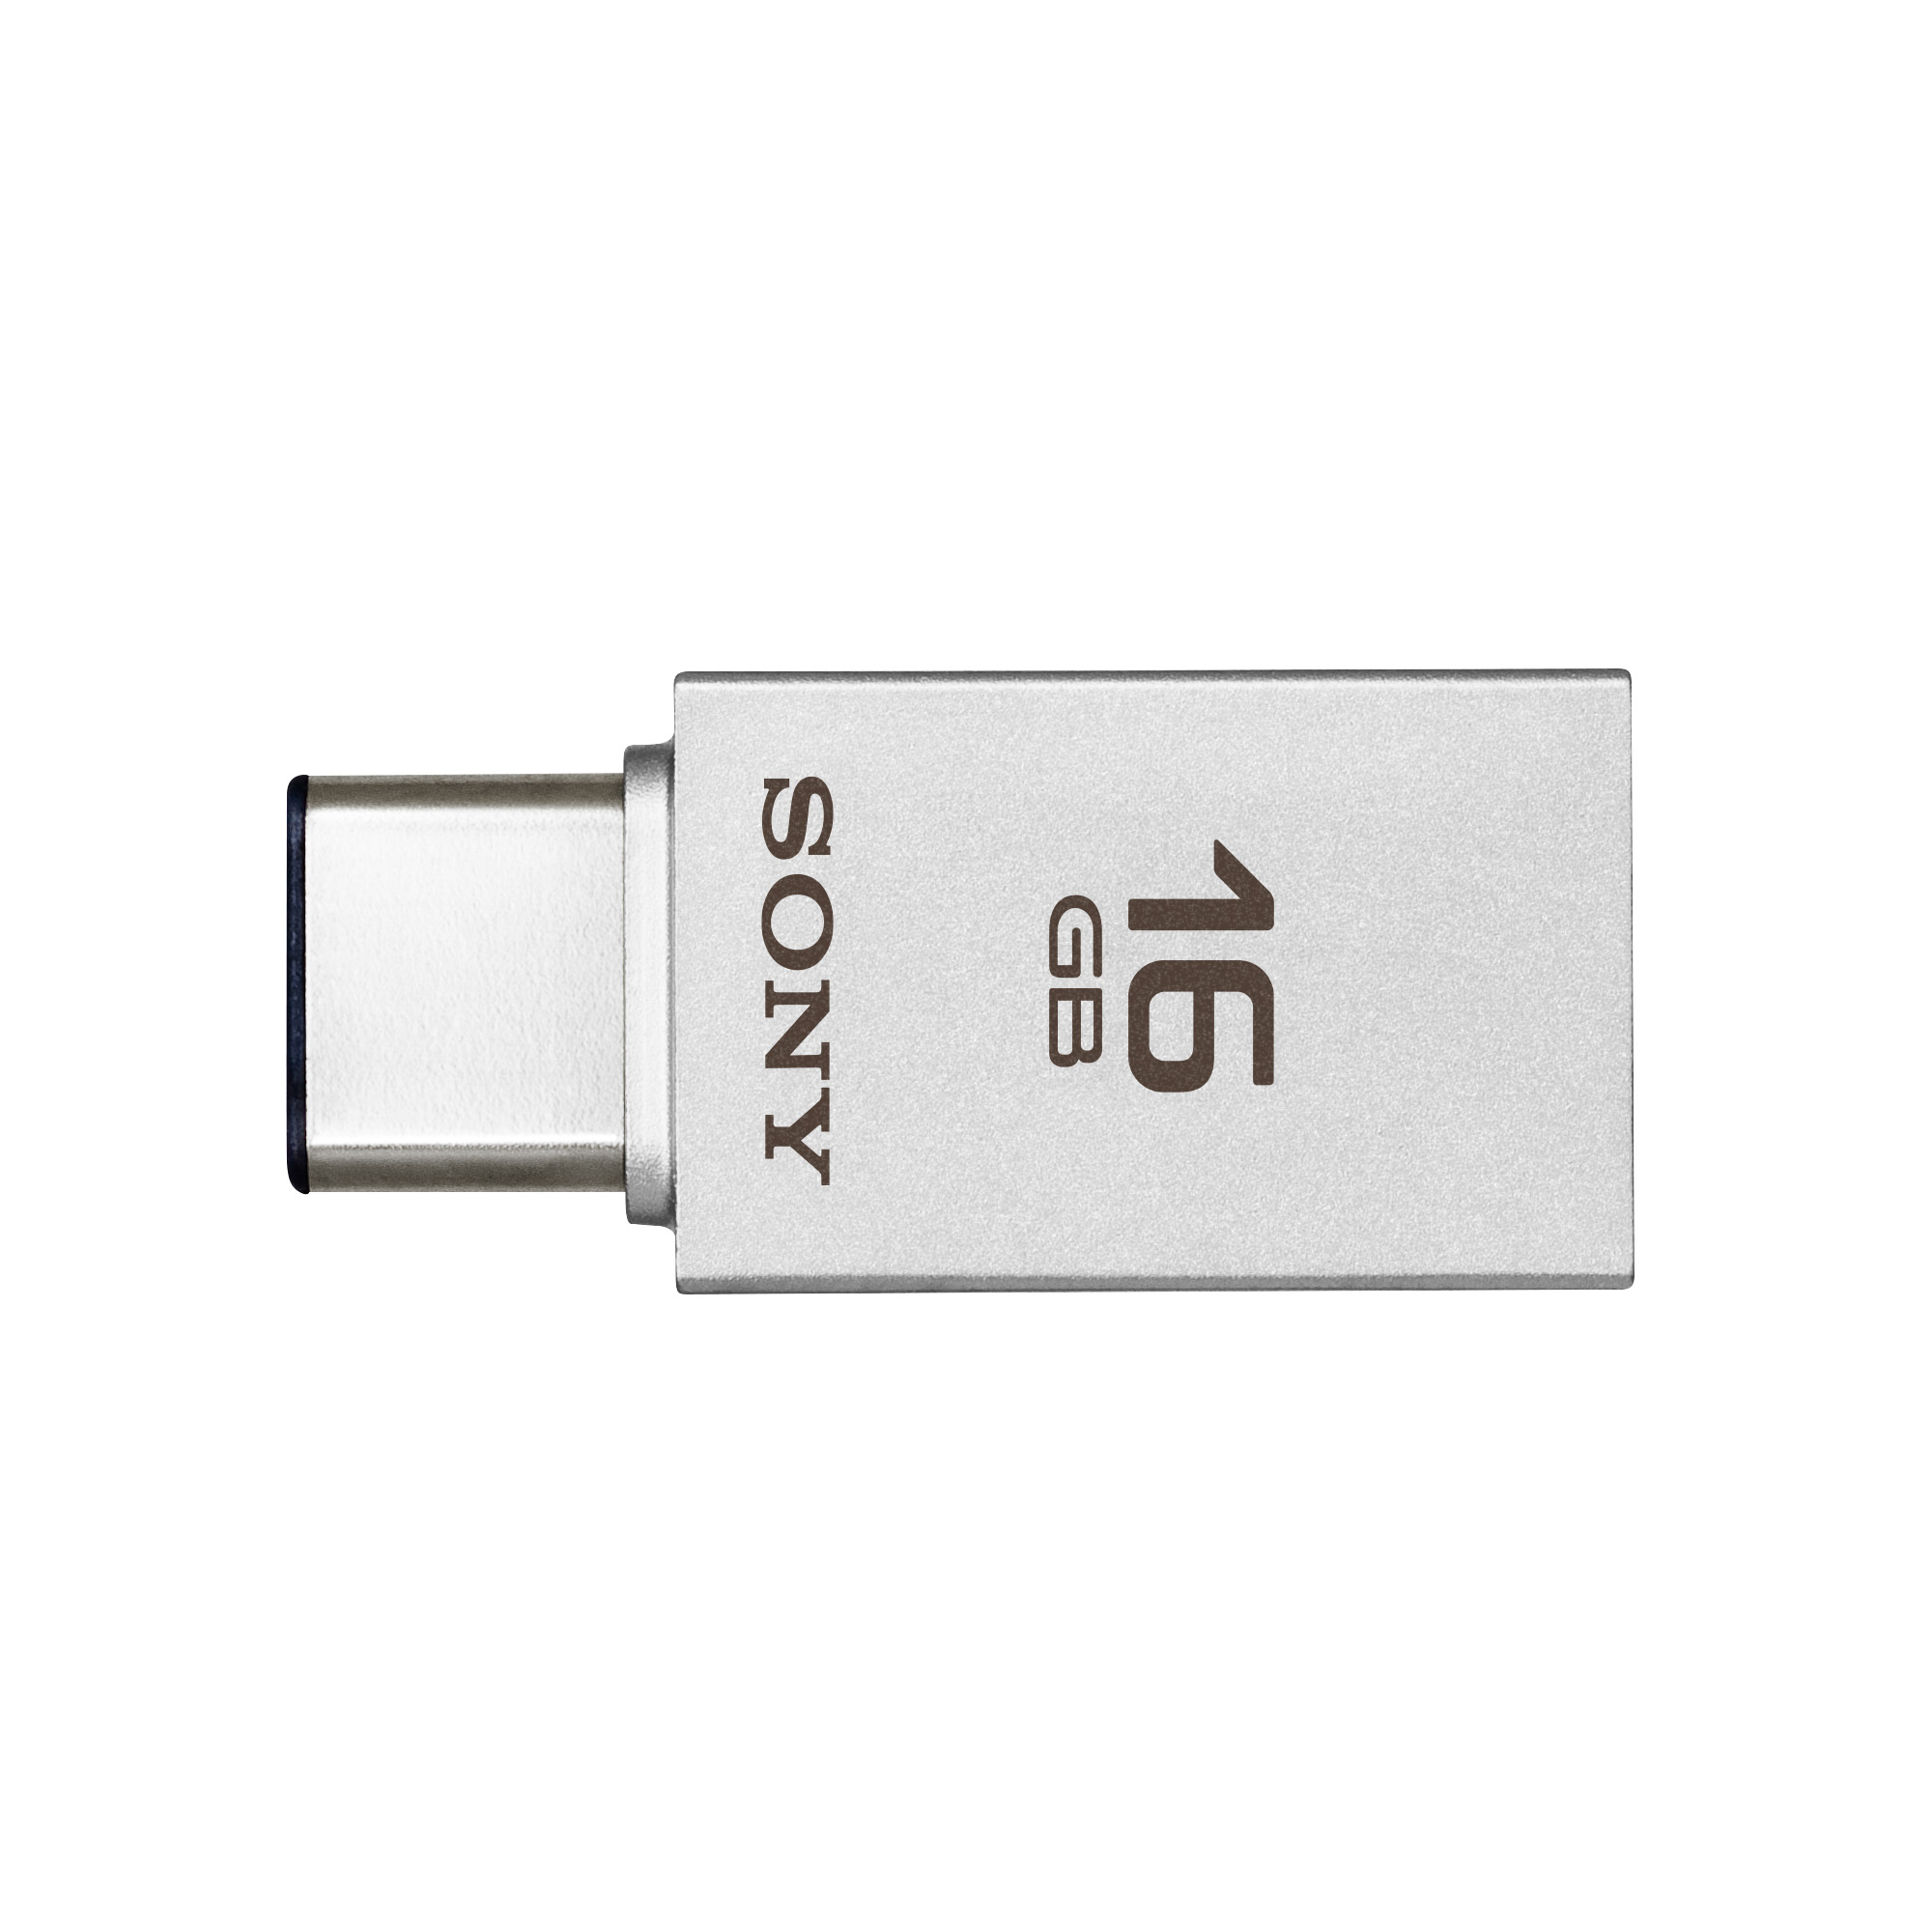 Immagine pubblicata in relazione al seguente contenuto: Sony annuncia i drive USB USM-CA1 compatibili con USB 3.1 Type-C e Type-A | Nome immagine: news23709_Sony_USM64CA1_2.jpg